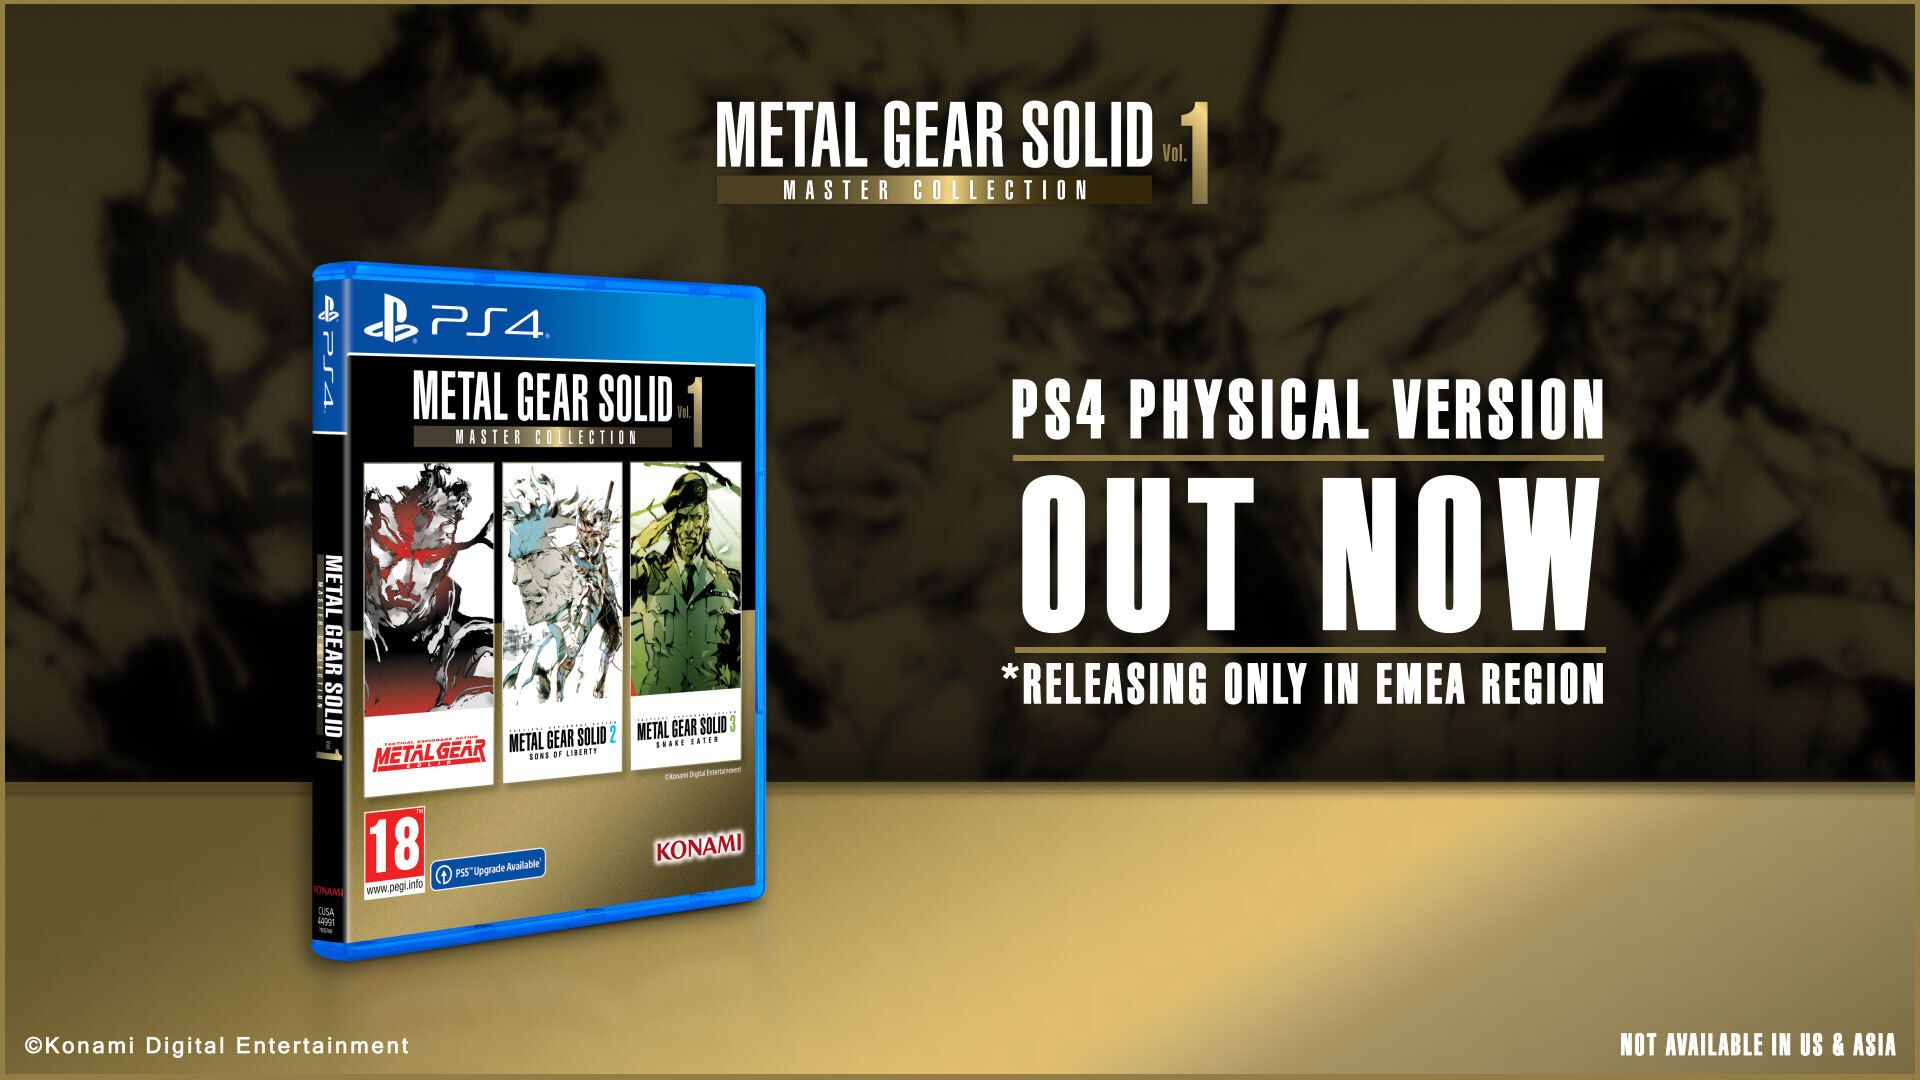 Metal Gear Solid: Master Collection Vol.1 Disponibile in Edizione Fisica su PS4